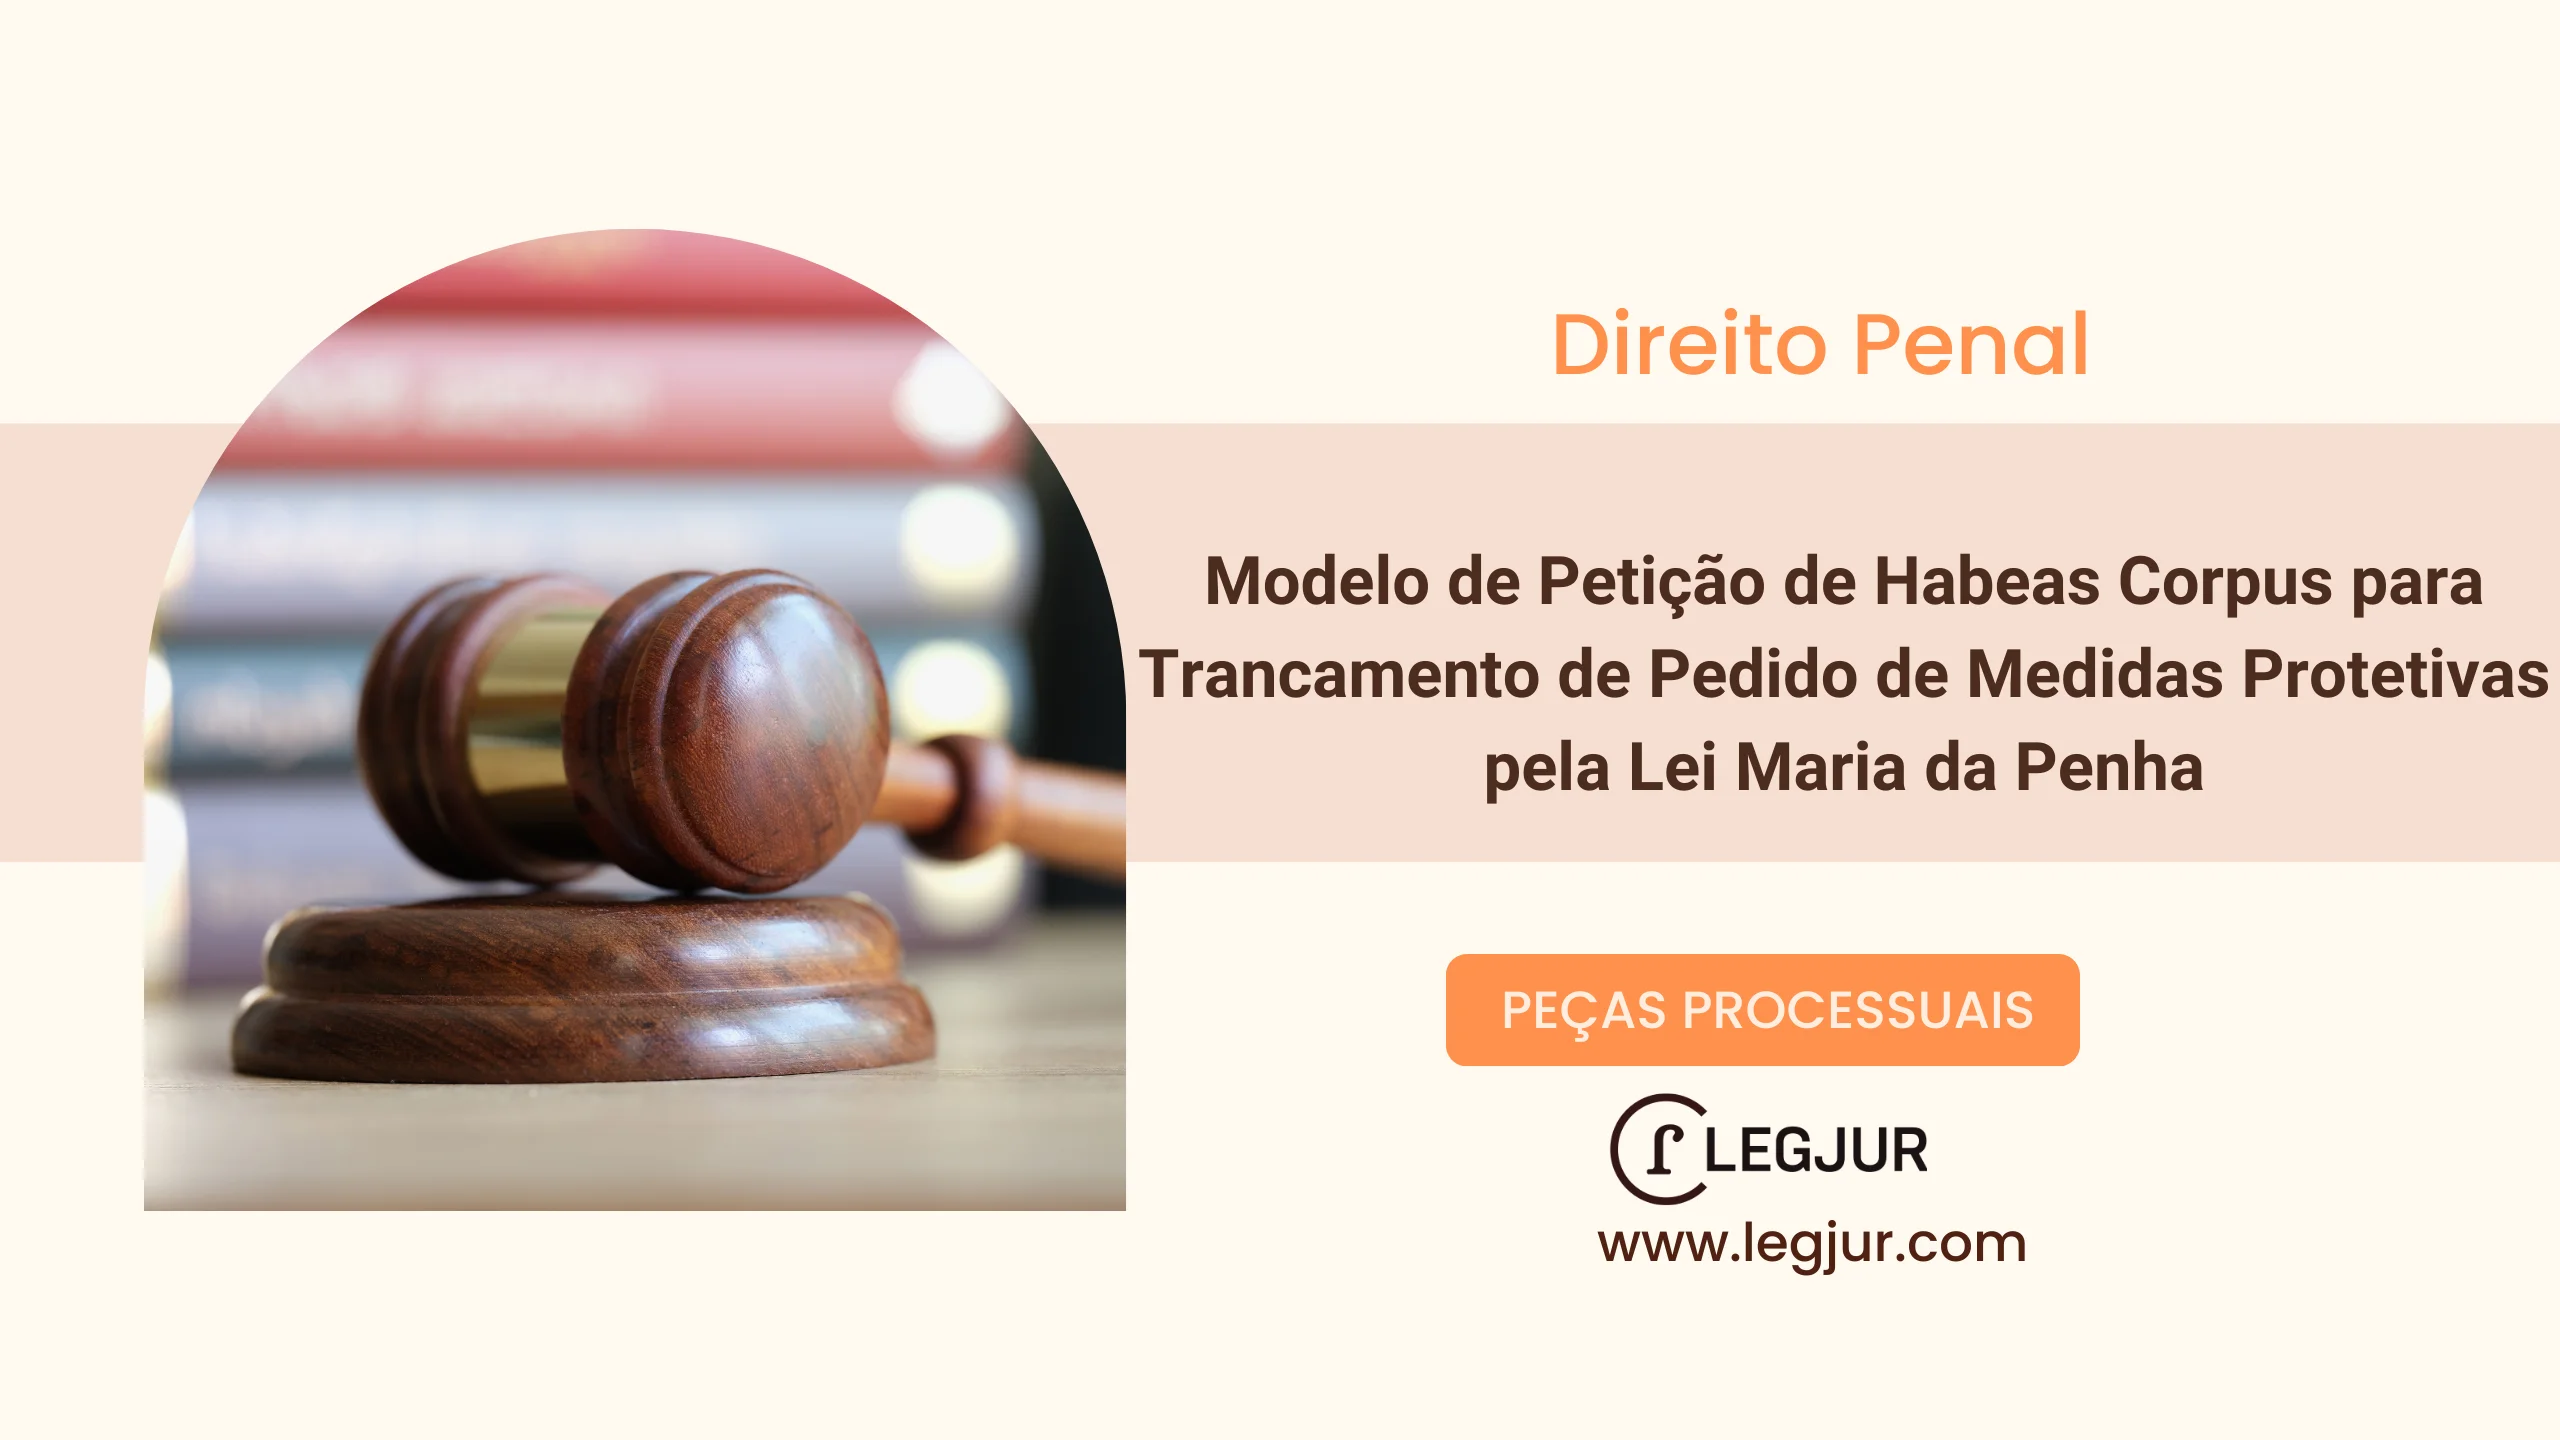 Modelo de Petição de Habeas Corpus para Trancamento de Pedido de Medidas Protetivas pela Lei Maria da Penha